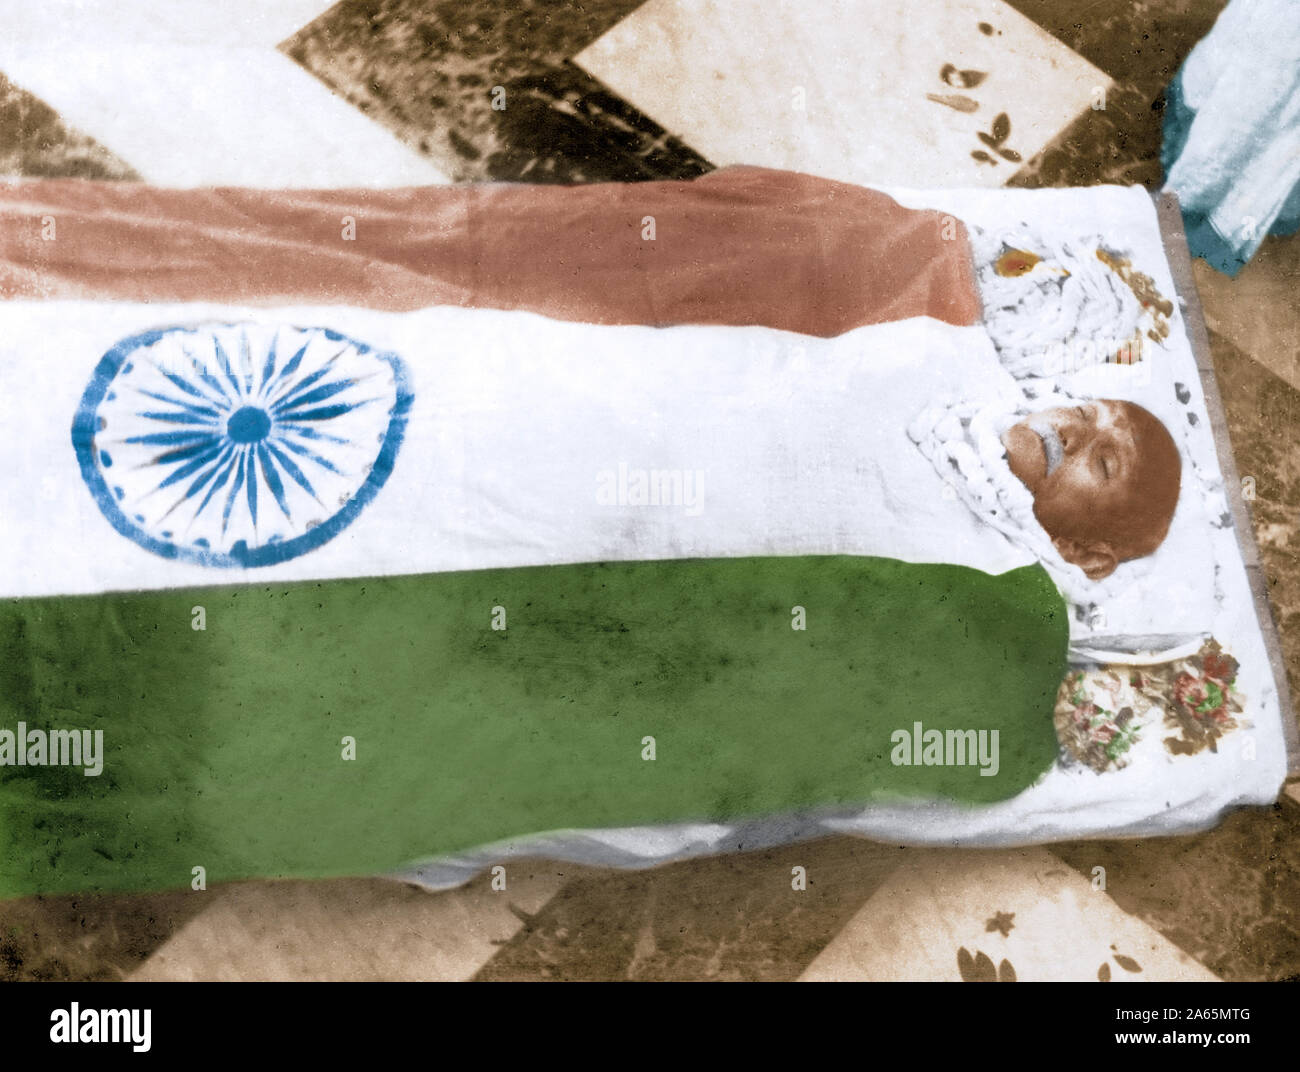 Mahatma Gandhi dead body draped in flag, New Delhi, India, January 31, 1948 Stock Photo